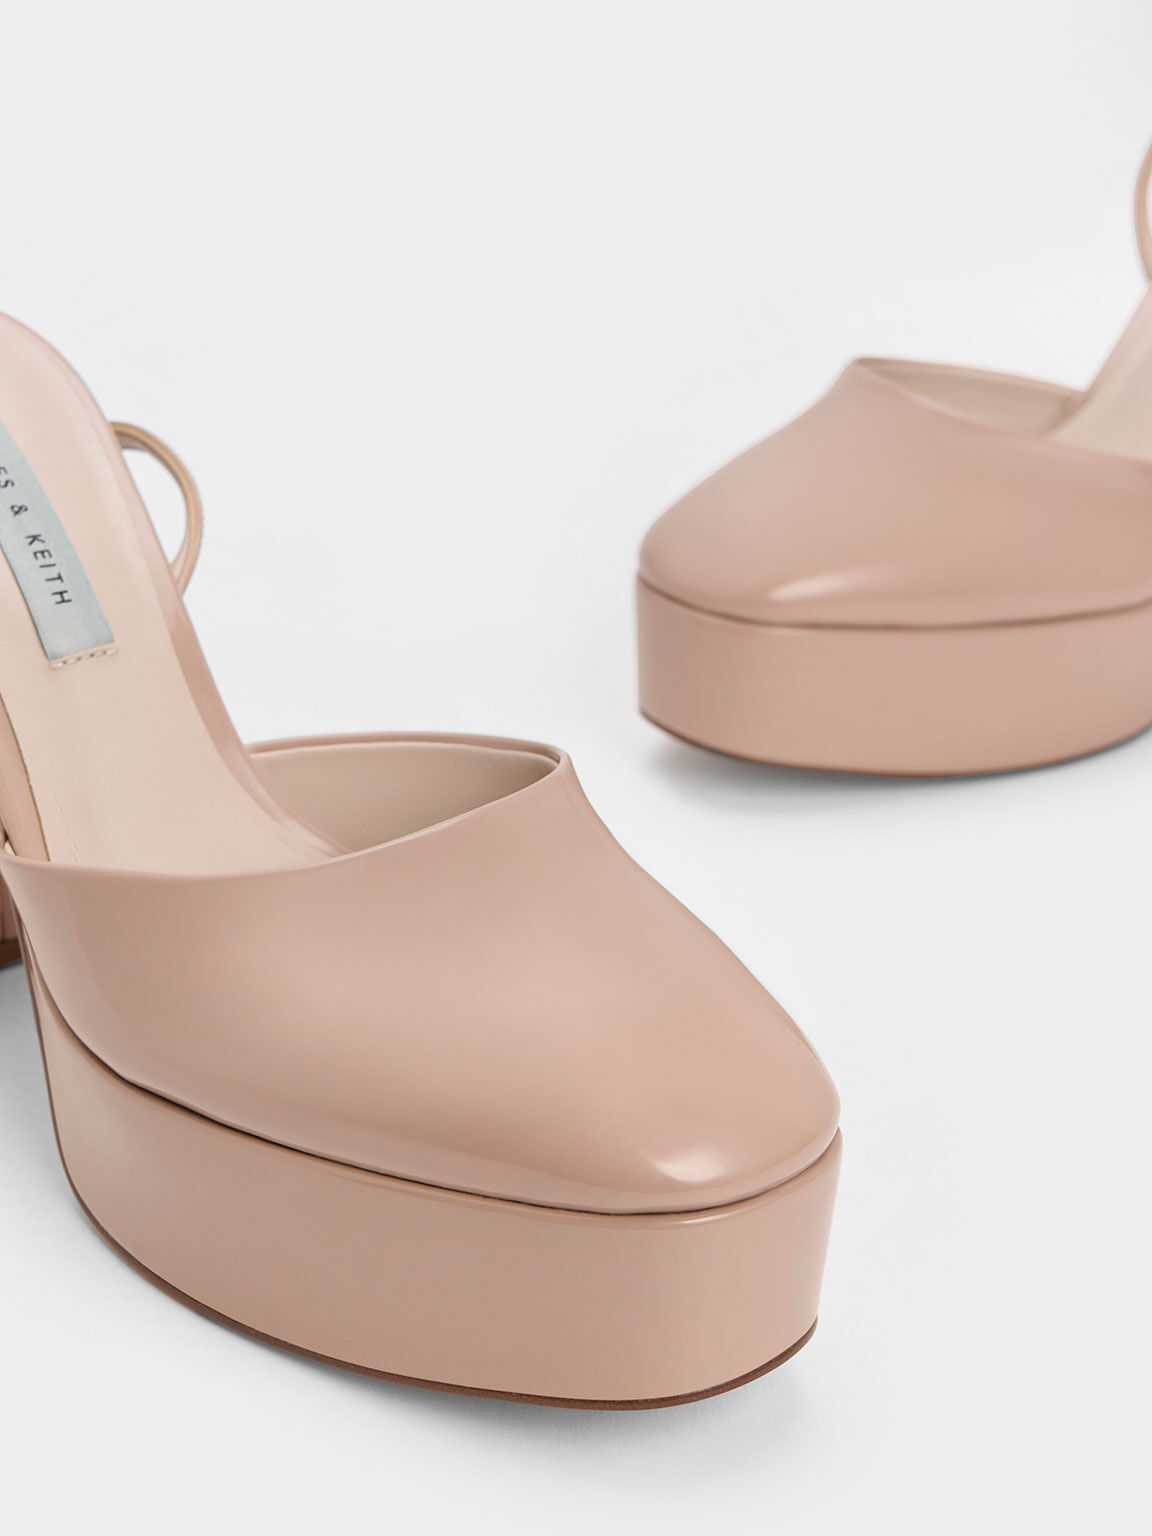 Sepatu Pumps Platform Ankle-Strap Patent, Nude, hi-res